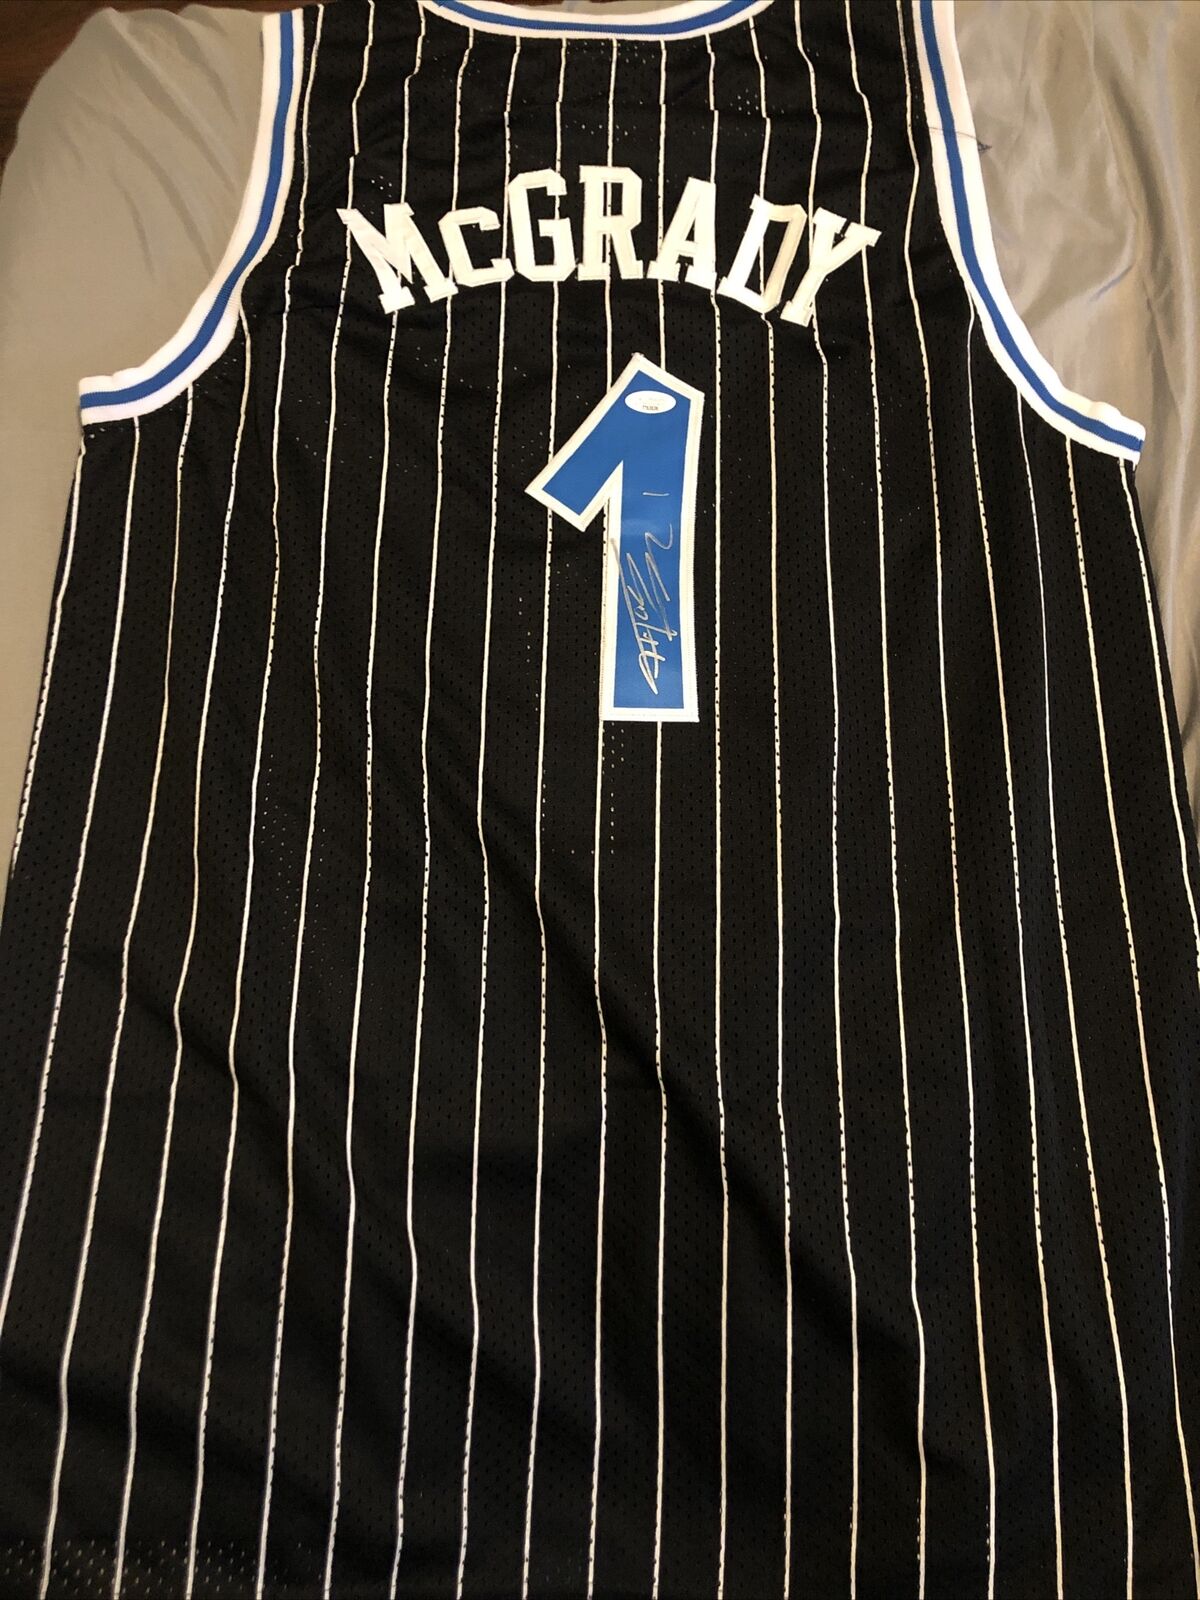 Tracy McGrady “T-MAC” Autographed Framed Orlando Magic Jersey - Fanatics COA